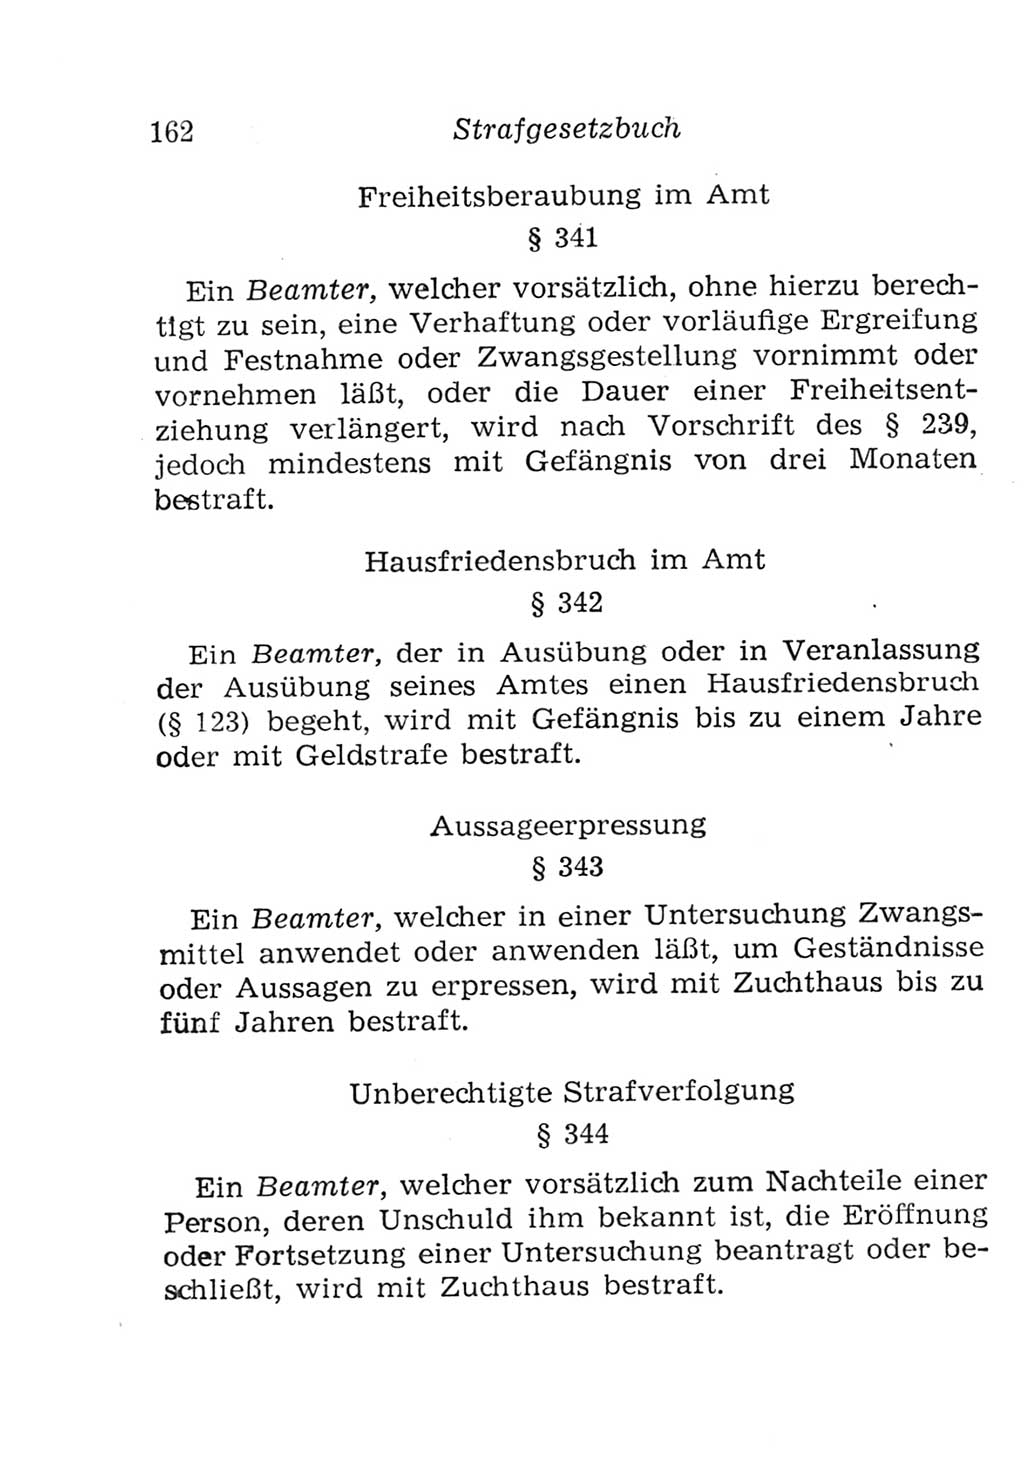 Strafgesetzbuch (StGB) und andere Strafgesetze [Deutsche Demokratische Republik (DDR)] 1957, Seite 162 (StGB Strafges. DDR 1957, S. 162)